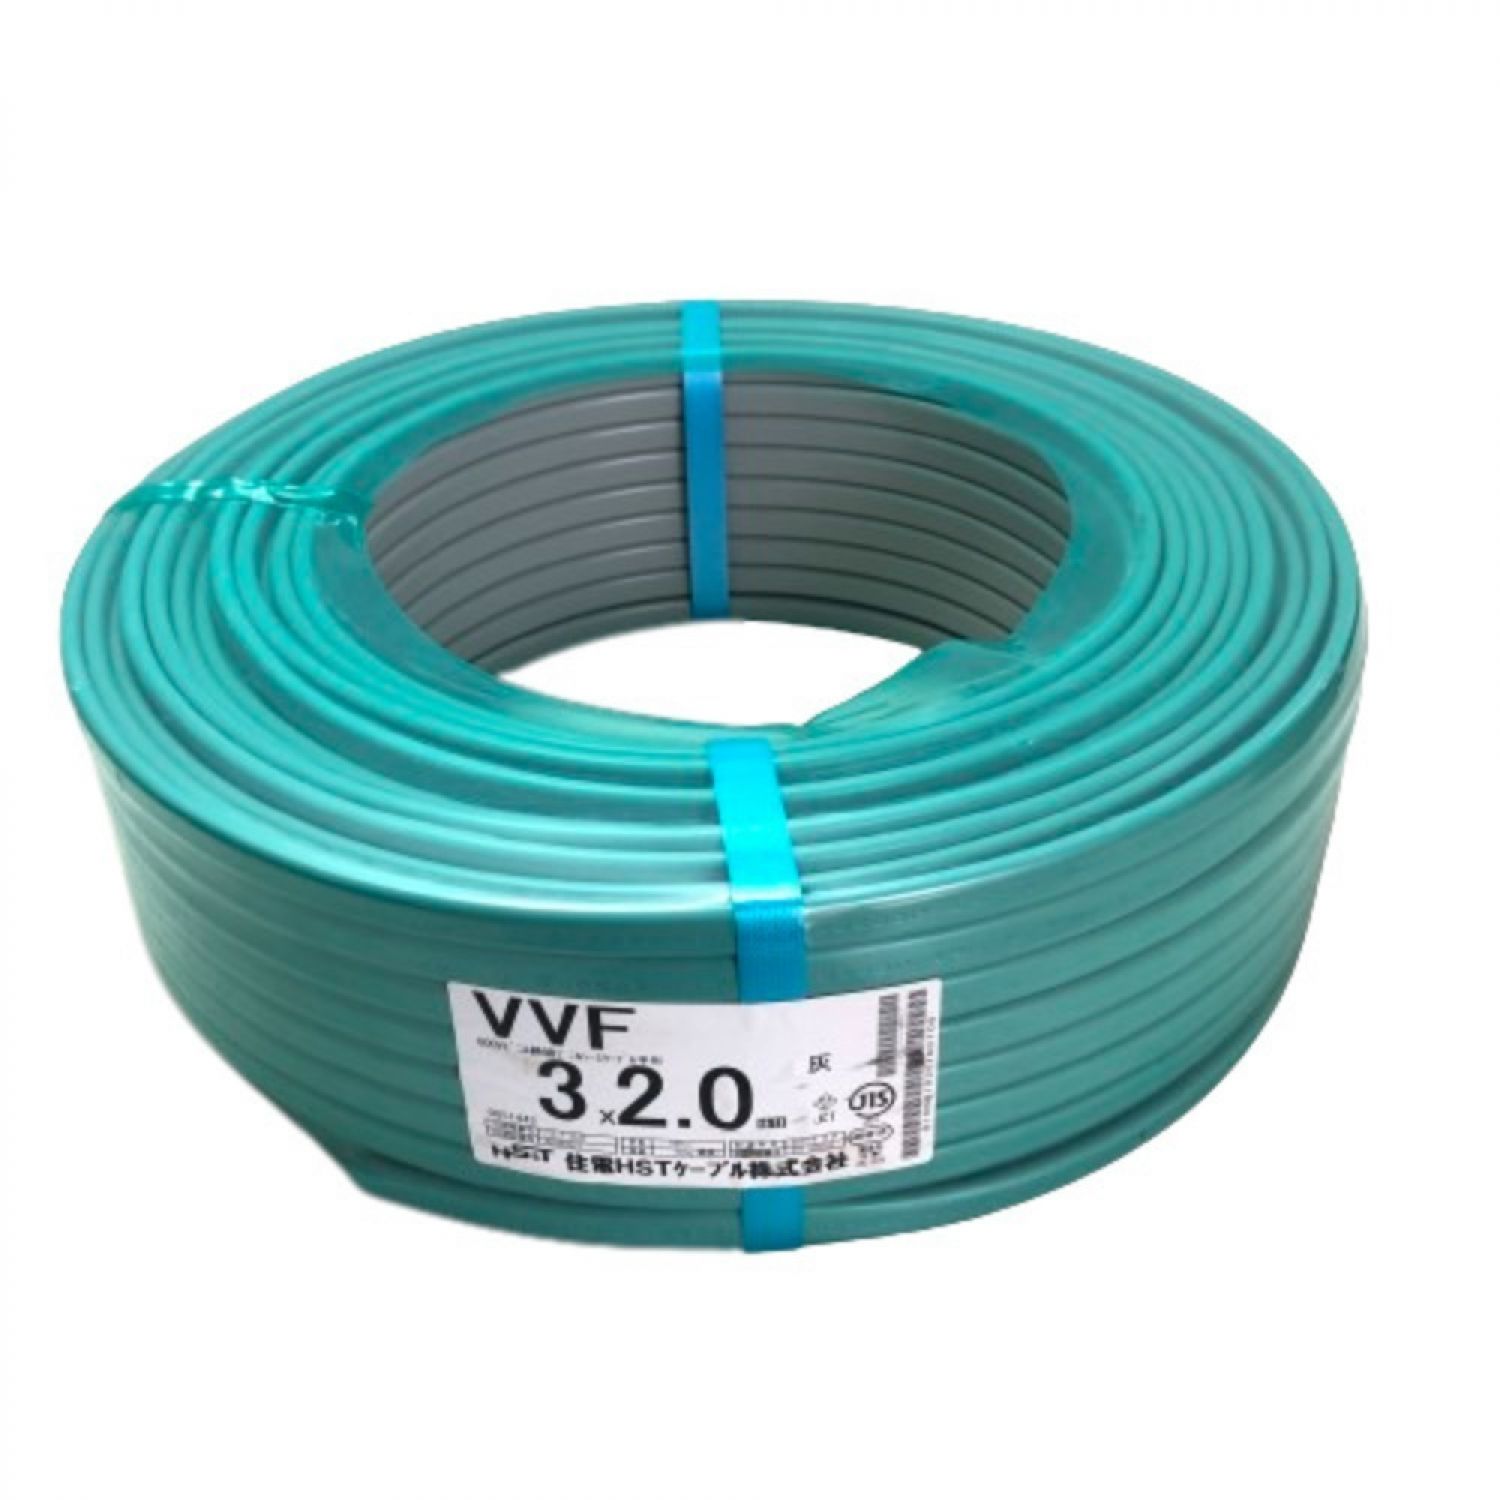 熱い販売 VVF2.0-3c 住電HSTケーブル 黒白緑 100m 100V ケーブル 